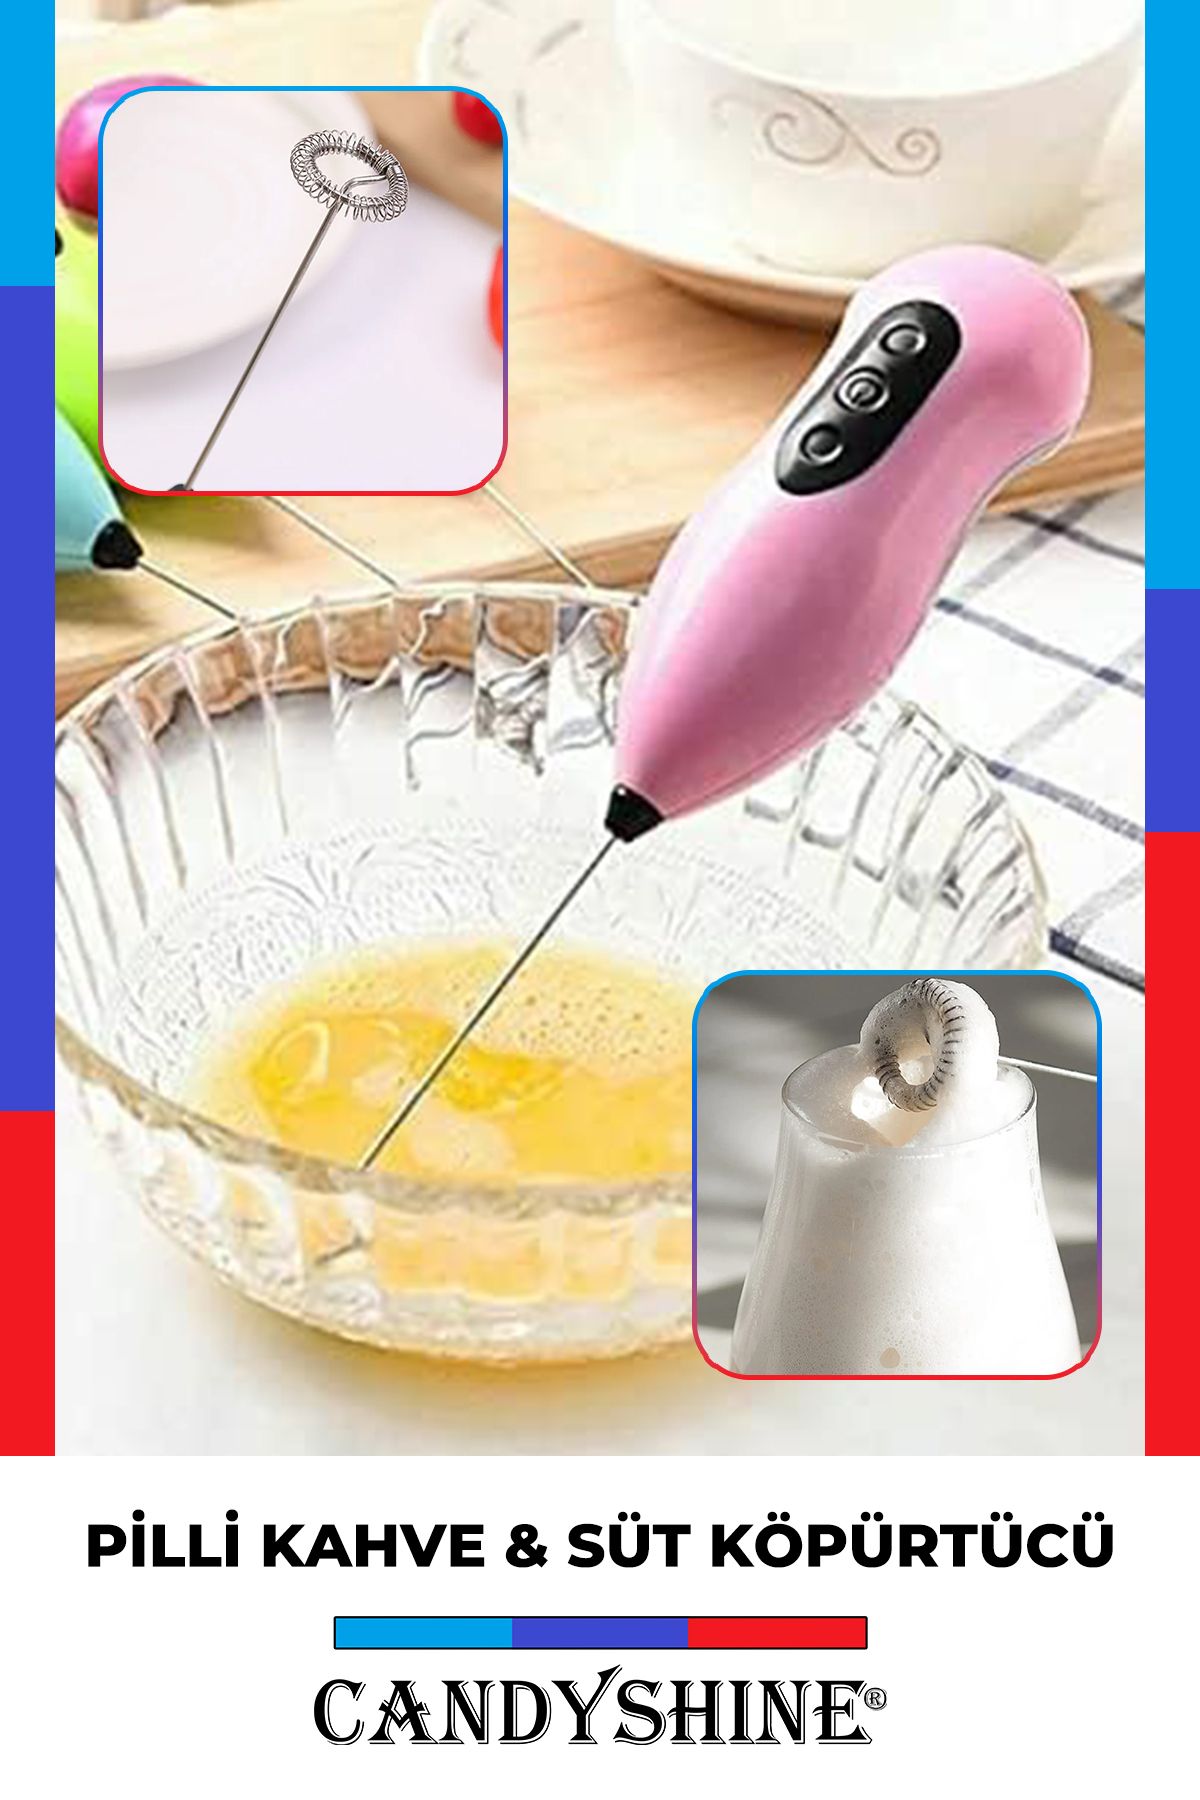 CandyShine Mini Karıştırıcı Süt Köpürtücü El Mikseri Pilli Çırpıcı Blender